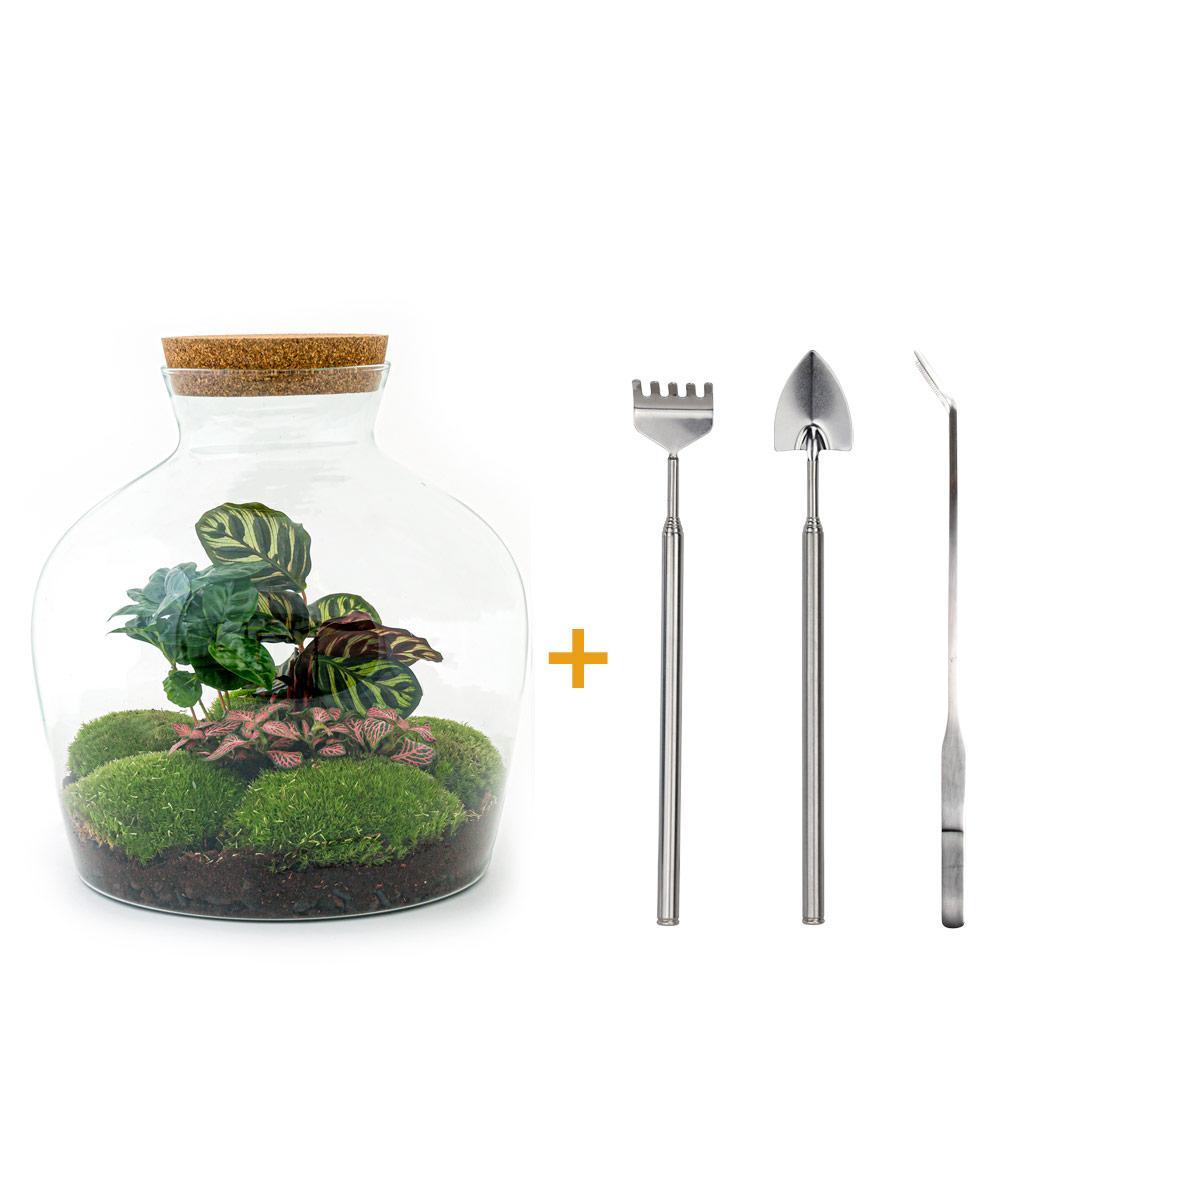 DIY terrarium - Fat Joe Coffea - ↑ 30 cm + Rake + Shovel + Tweezer